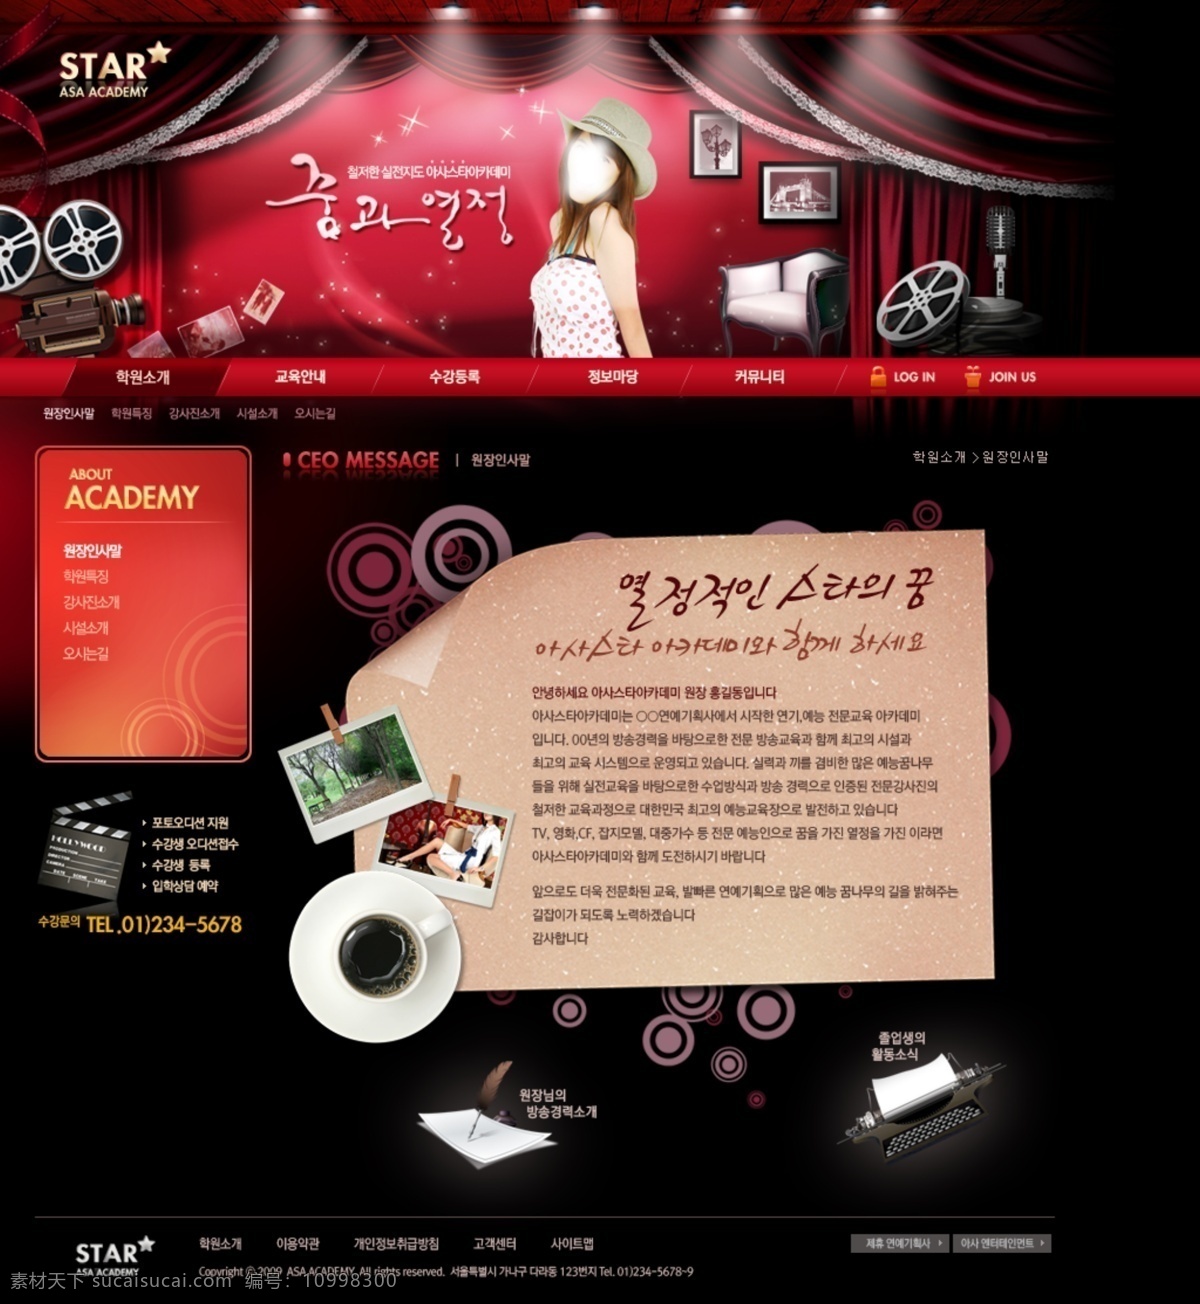 韩国模板 黑色网页模板 美女 人物 摄影网页模板 网页 banner 网页菜单 网页模板 影视 影视网页模板 明星网页模板 明星摄影 网页素材 源文件